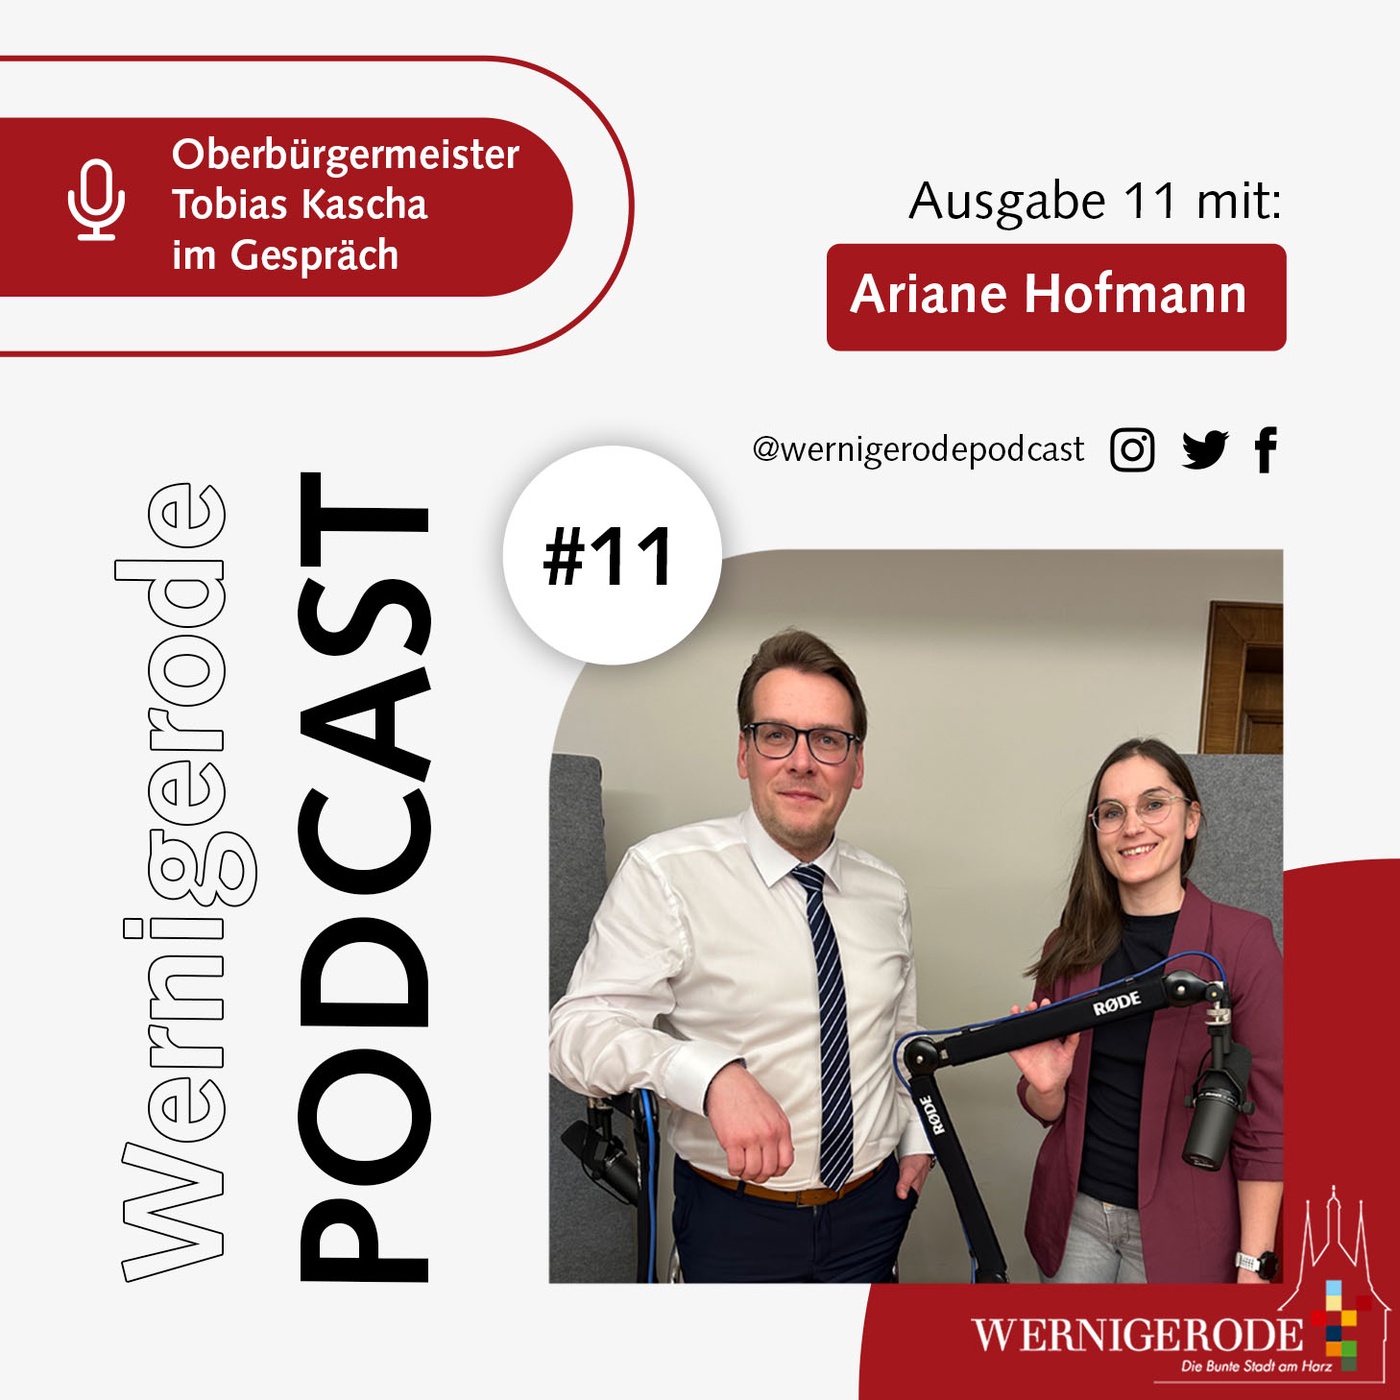 Wernigerode Podcast  #11 - Oberbürgermeister Tobias Kascha im Gespräch mit Ariane Hofmann.